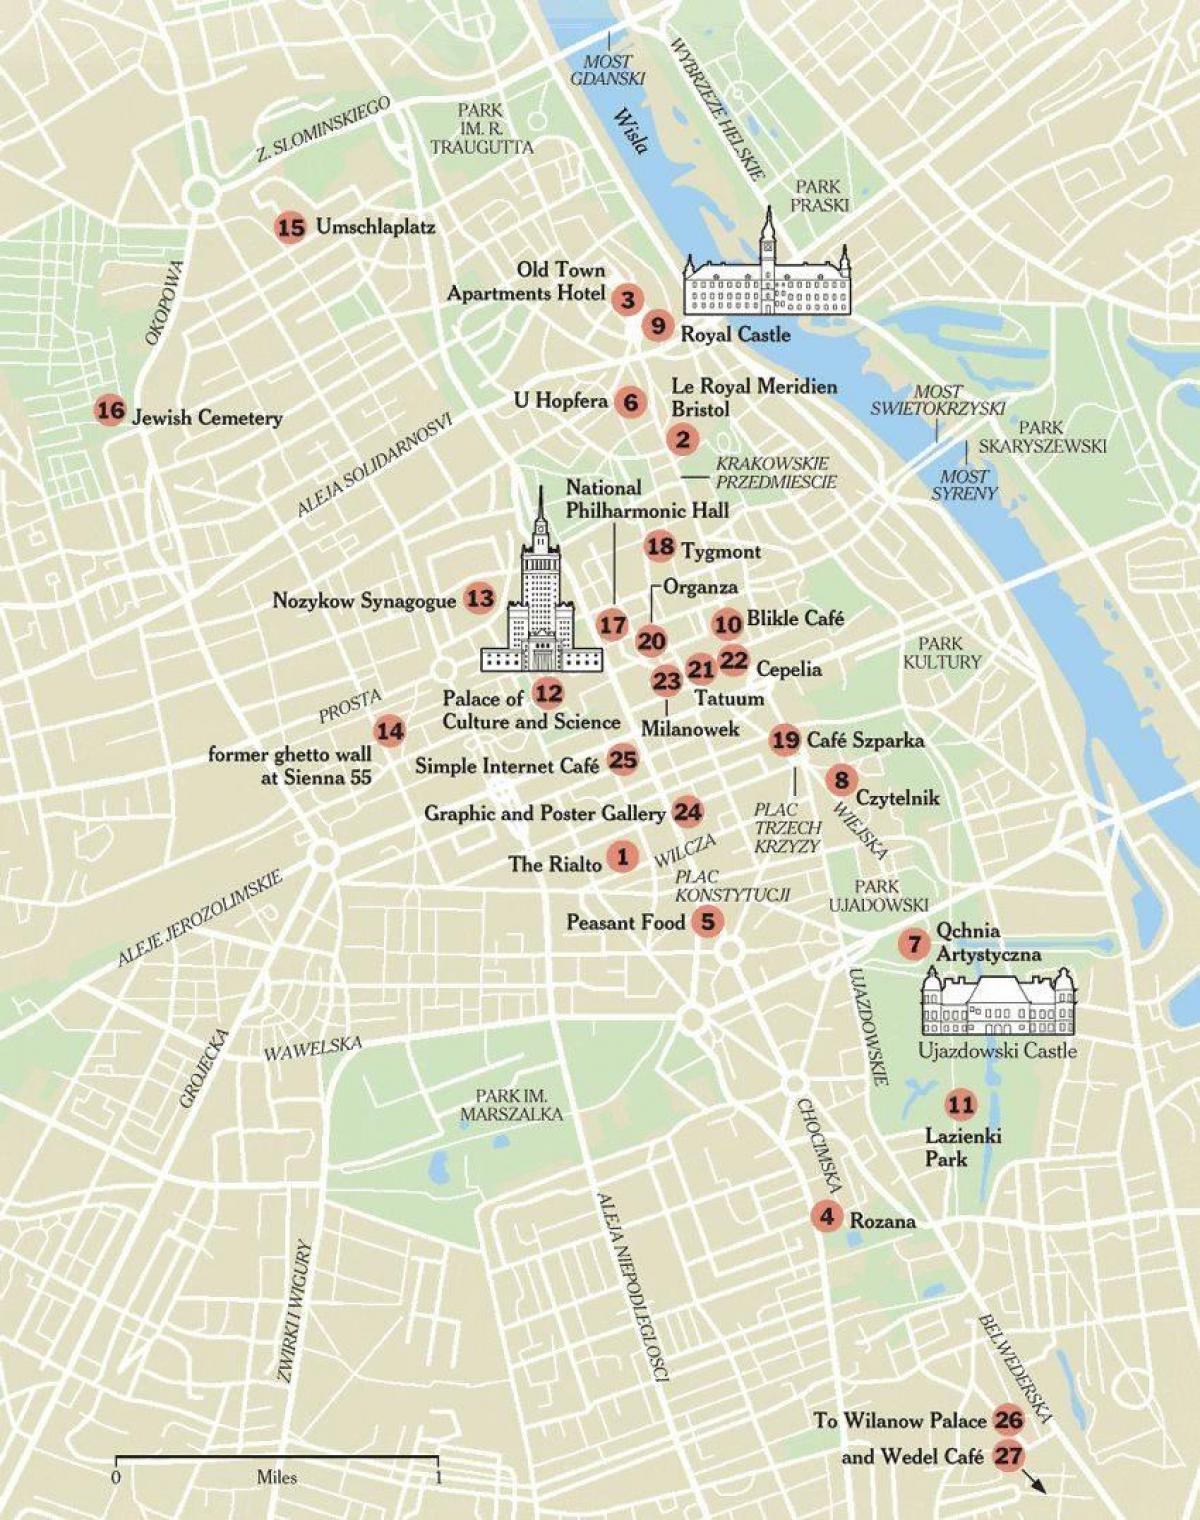 Χάρτης της Βαρσοβίας walking tour 